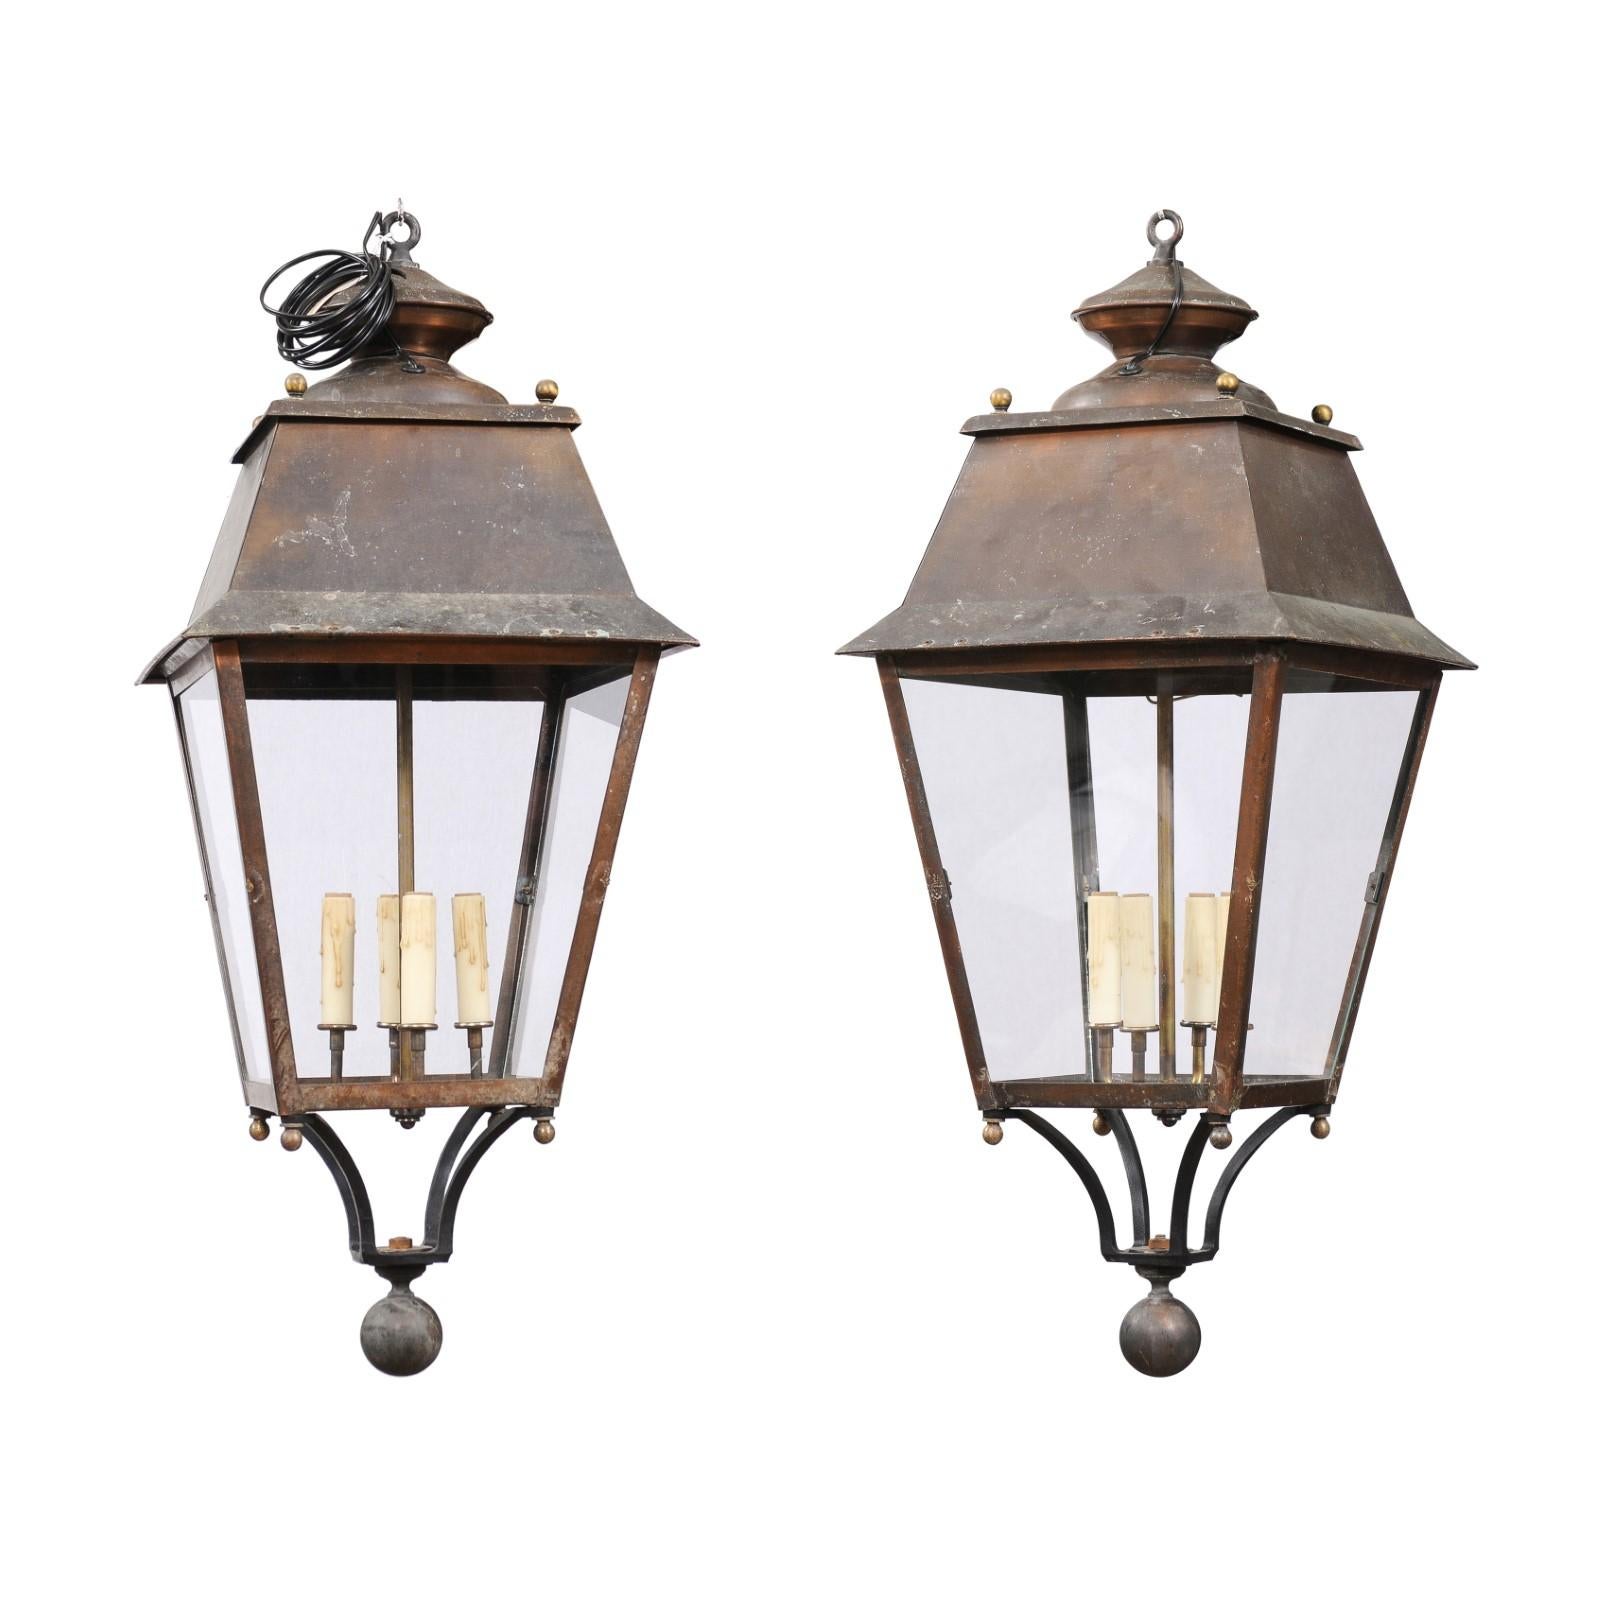 Deux lanternes françaises en cuivre du 20e siècle, à quatre lumières, avec des panneaux en verre, un petit épi de faîtage et un caractère rustique. Ces élégantes lanternes françaises en cuivre, datant du 20e siècle, rehaussent l'ambiance de votre